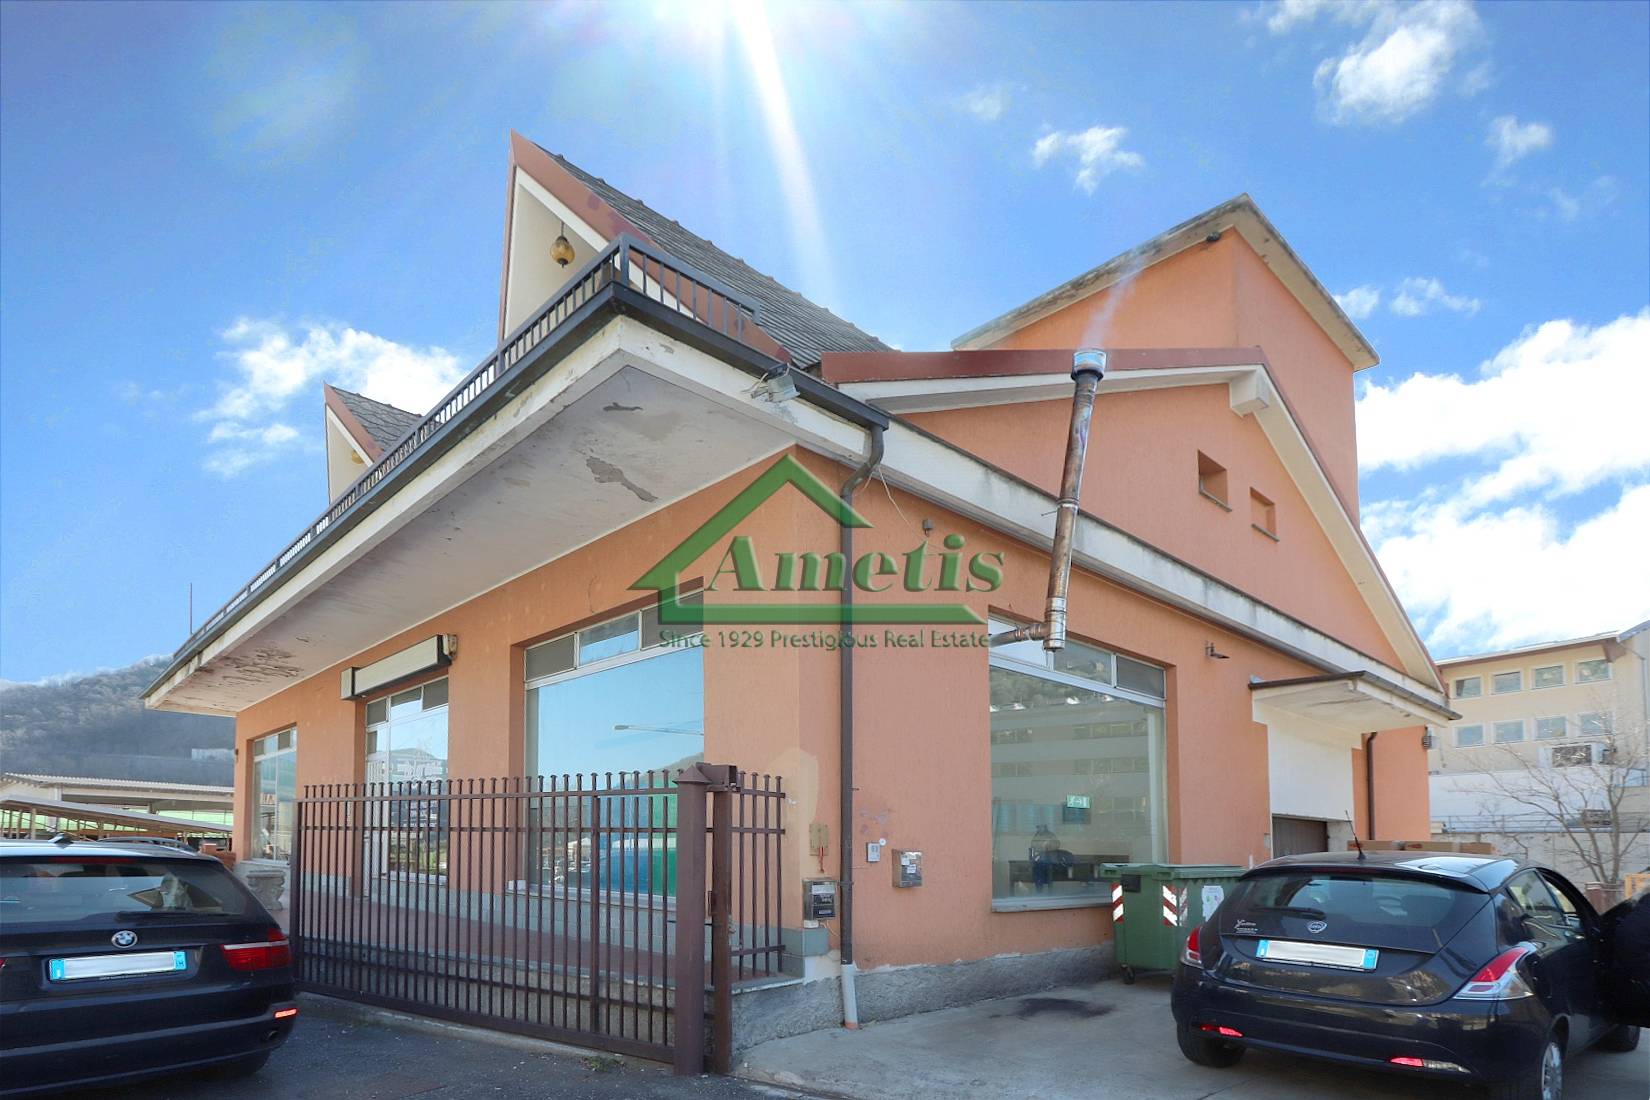 Negozio / Locale in vendita a Pieve di Teco, 8 locali, prezzo € 320.000 | CambioCasa.it